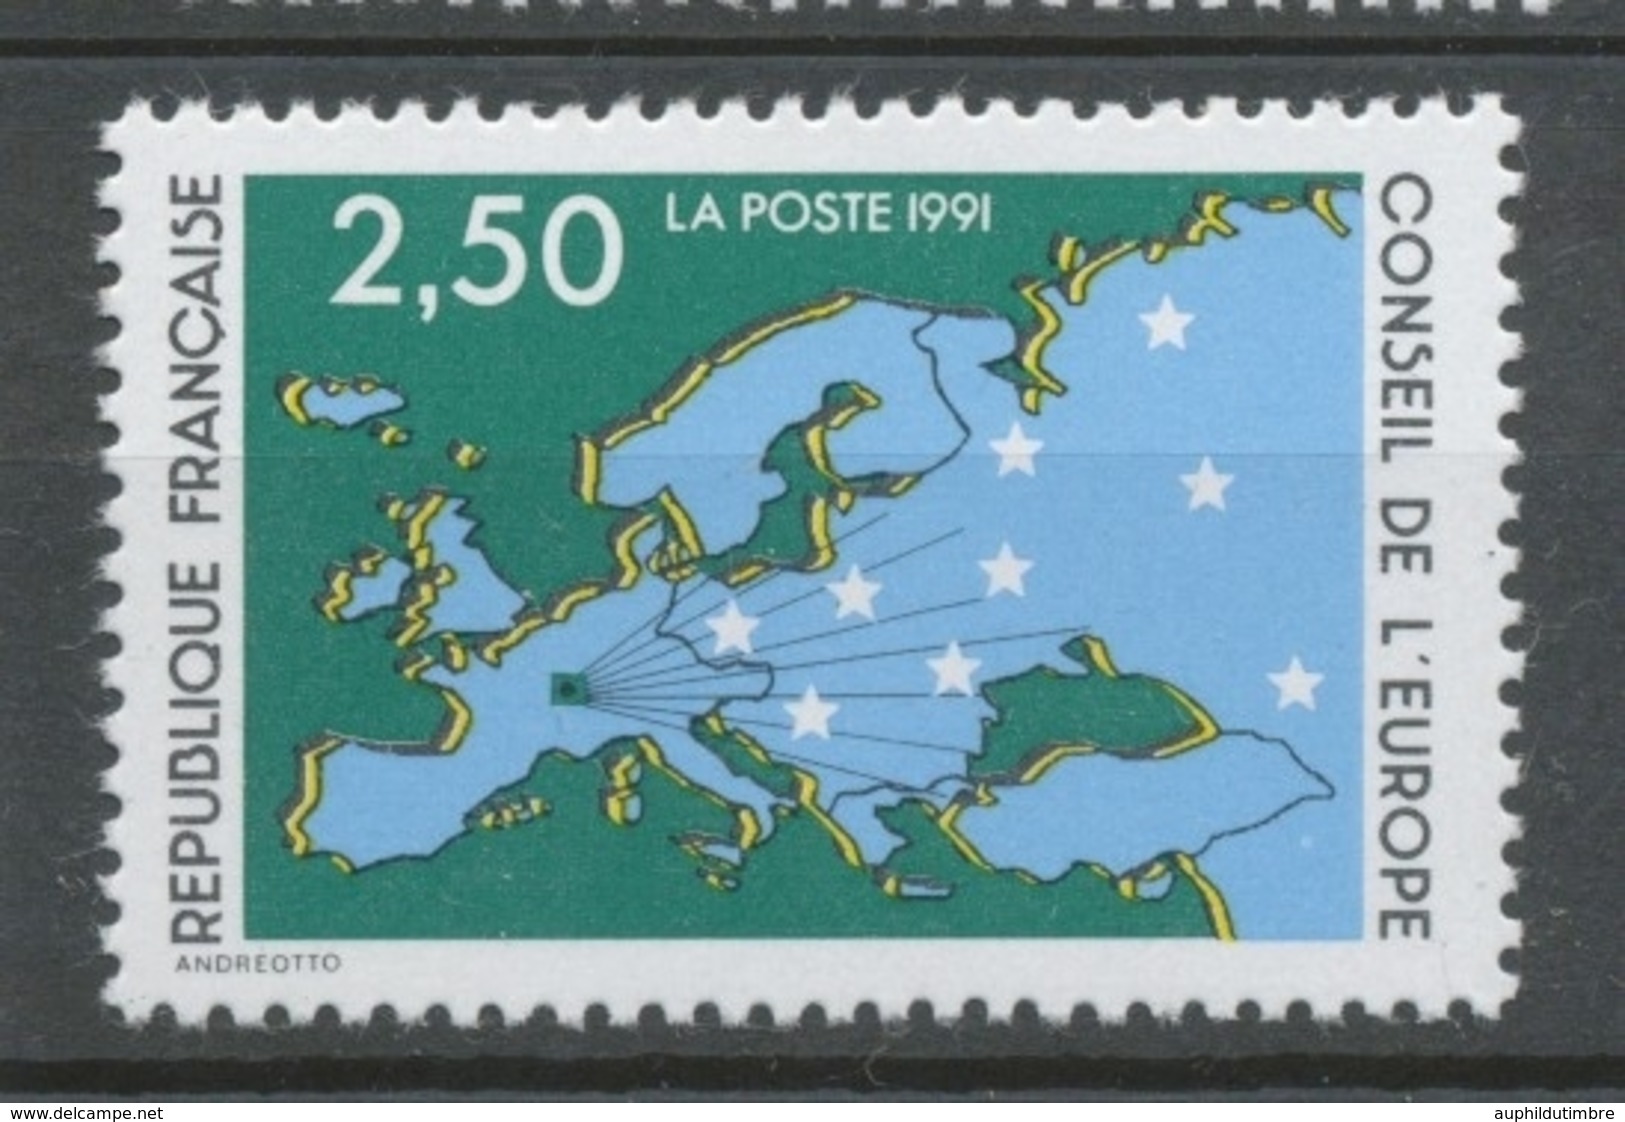 Service N°106 Conseil De L' Europe. 2f.50  Multicolore ZS106 - Nuovi